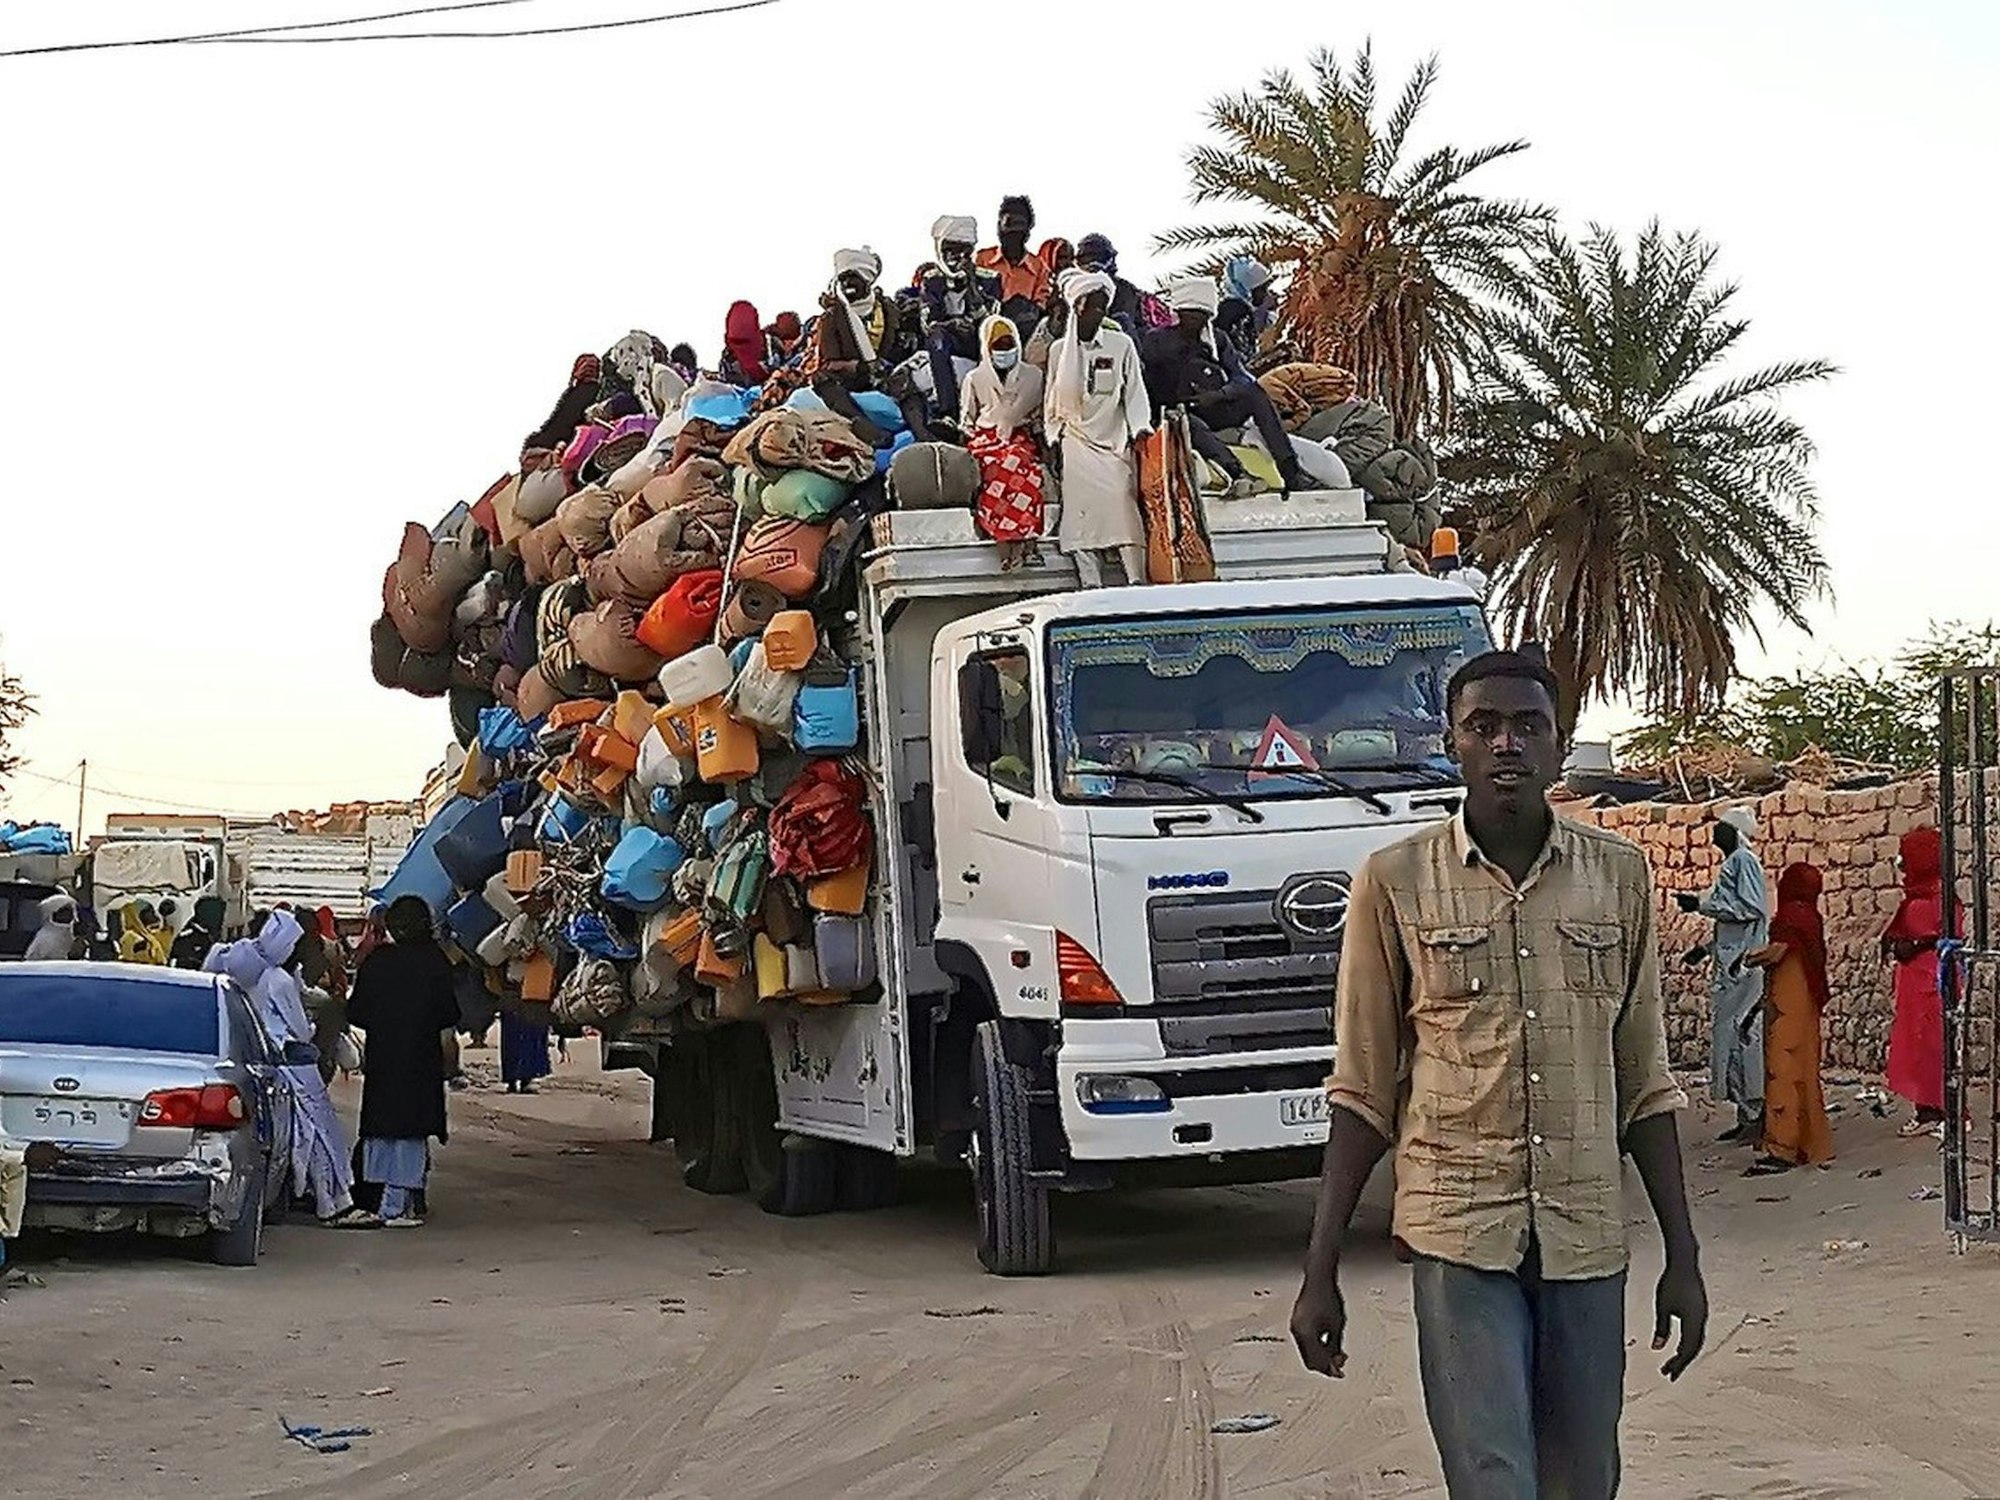 Ein Mann geht vor einem übervoll beladenen Lastwagen auf einer Straße im Tschad. Oben auf der Ladung sitzen weitere Menschen.